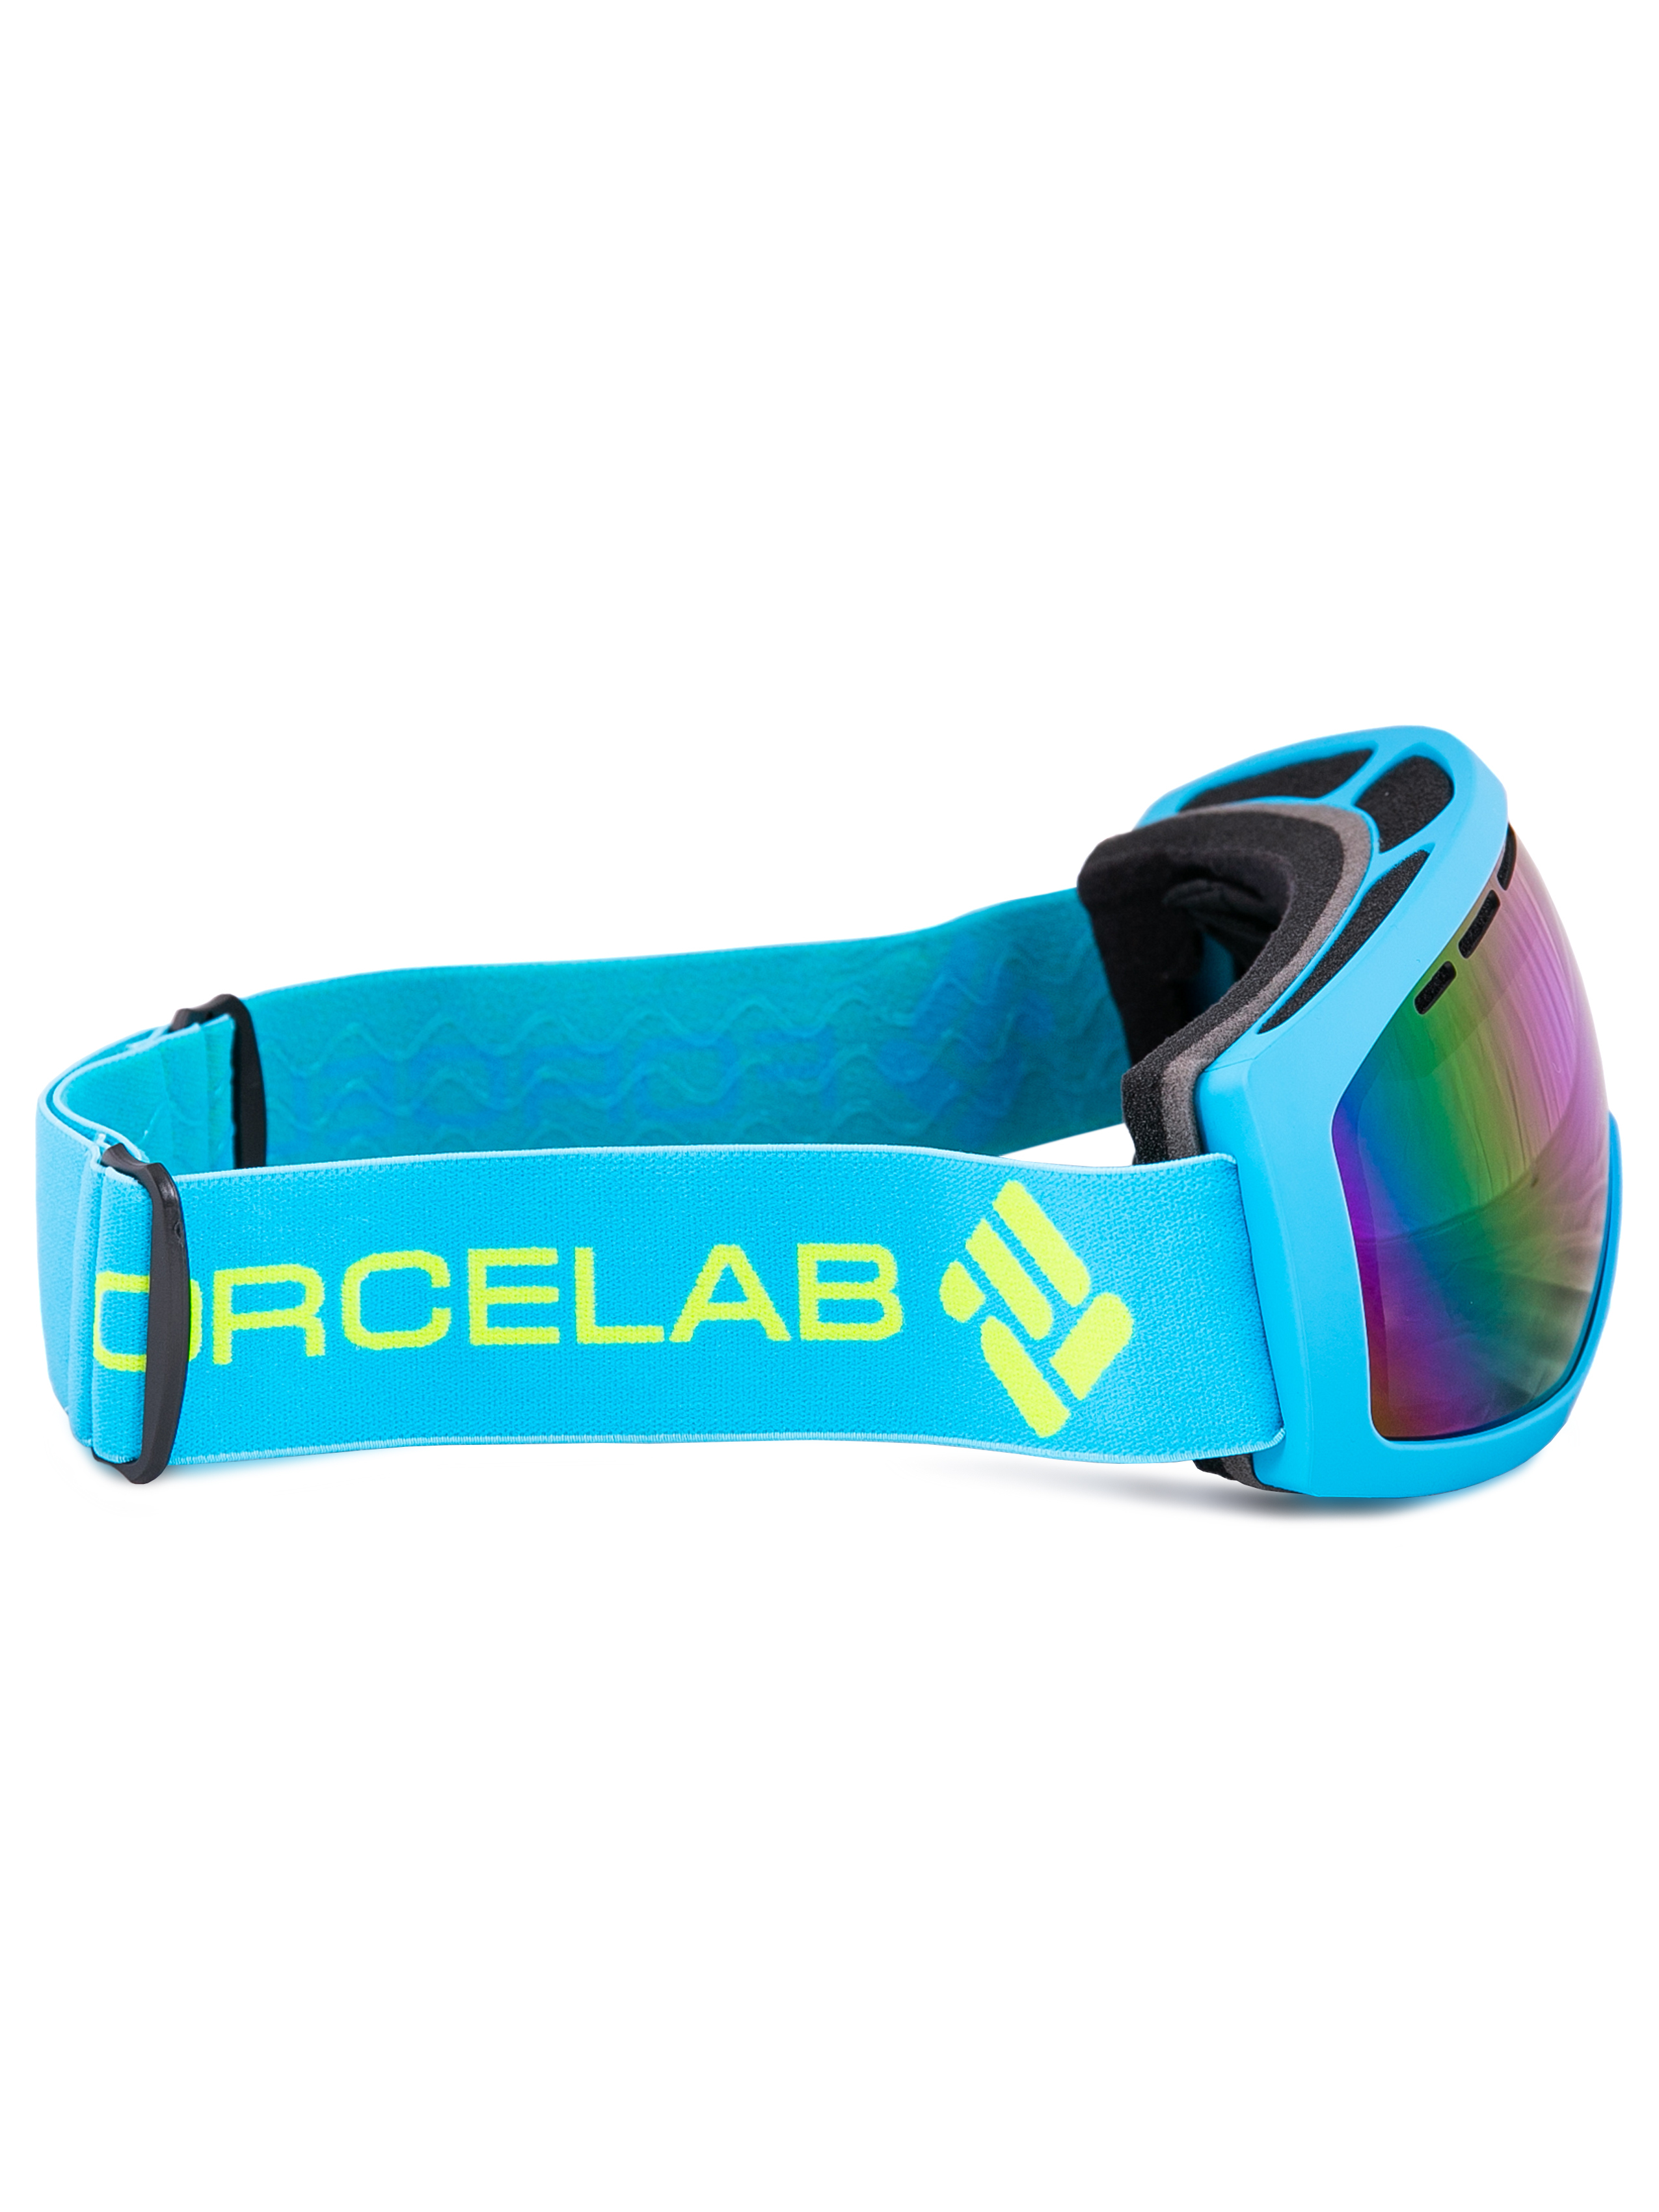 Очки-маска для горнолыжного, мото, вело, экстремальных видов спорта Forcelab (голубой), Че